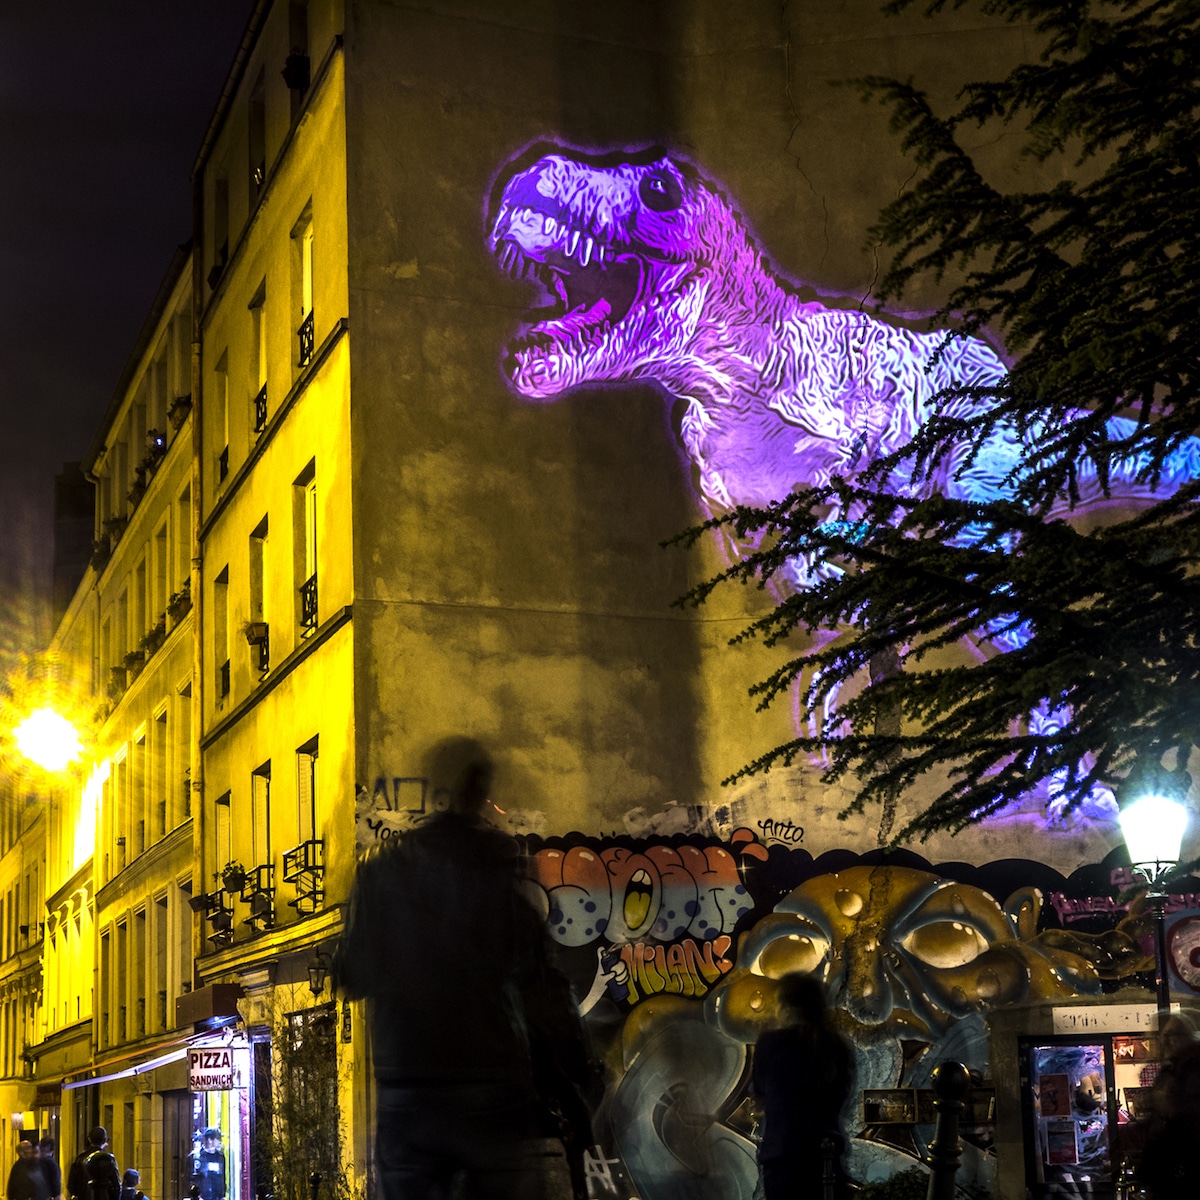 Julien Nonnon hologramas de dinosaurios